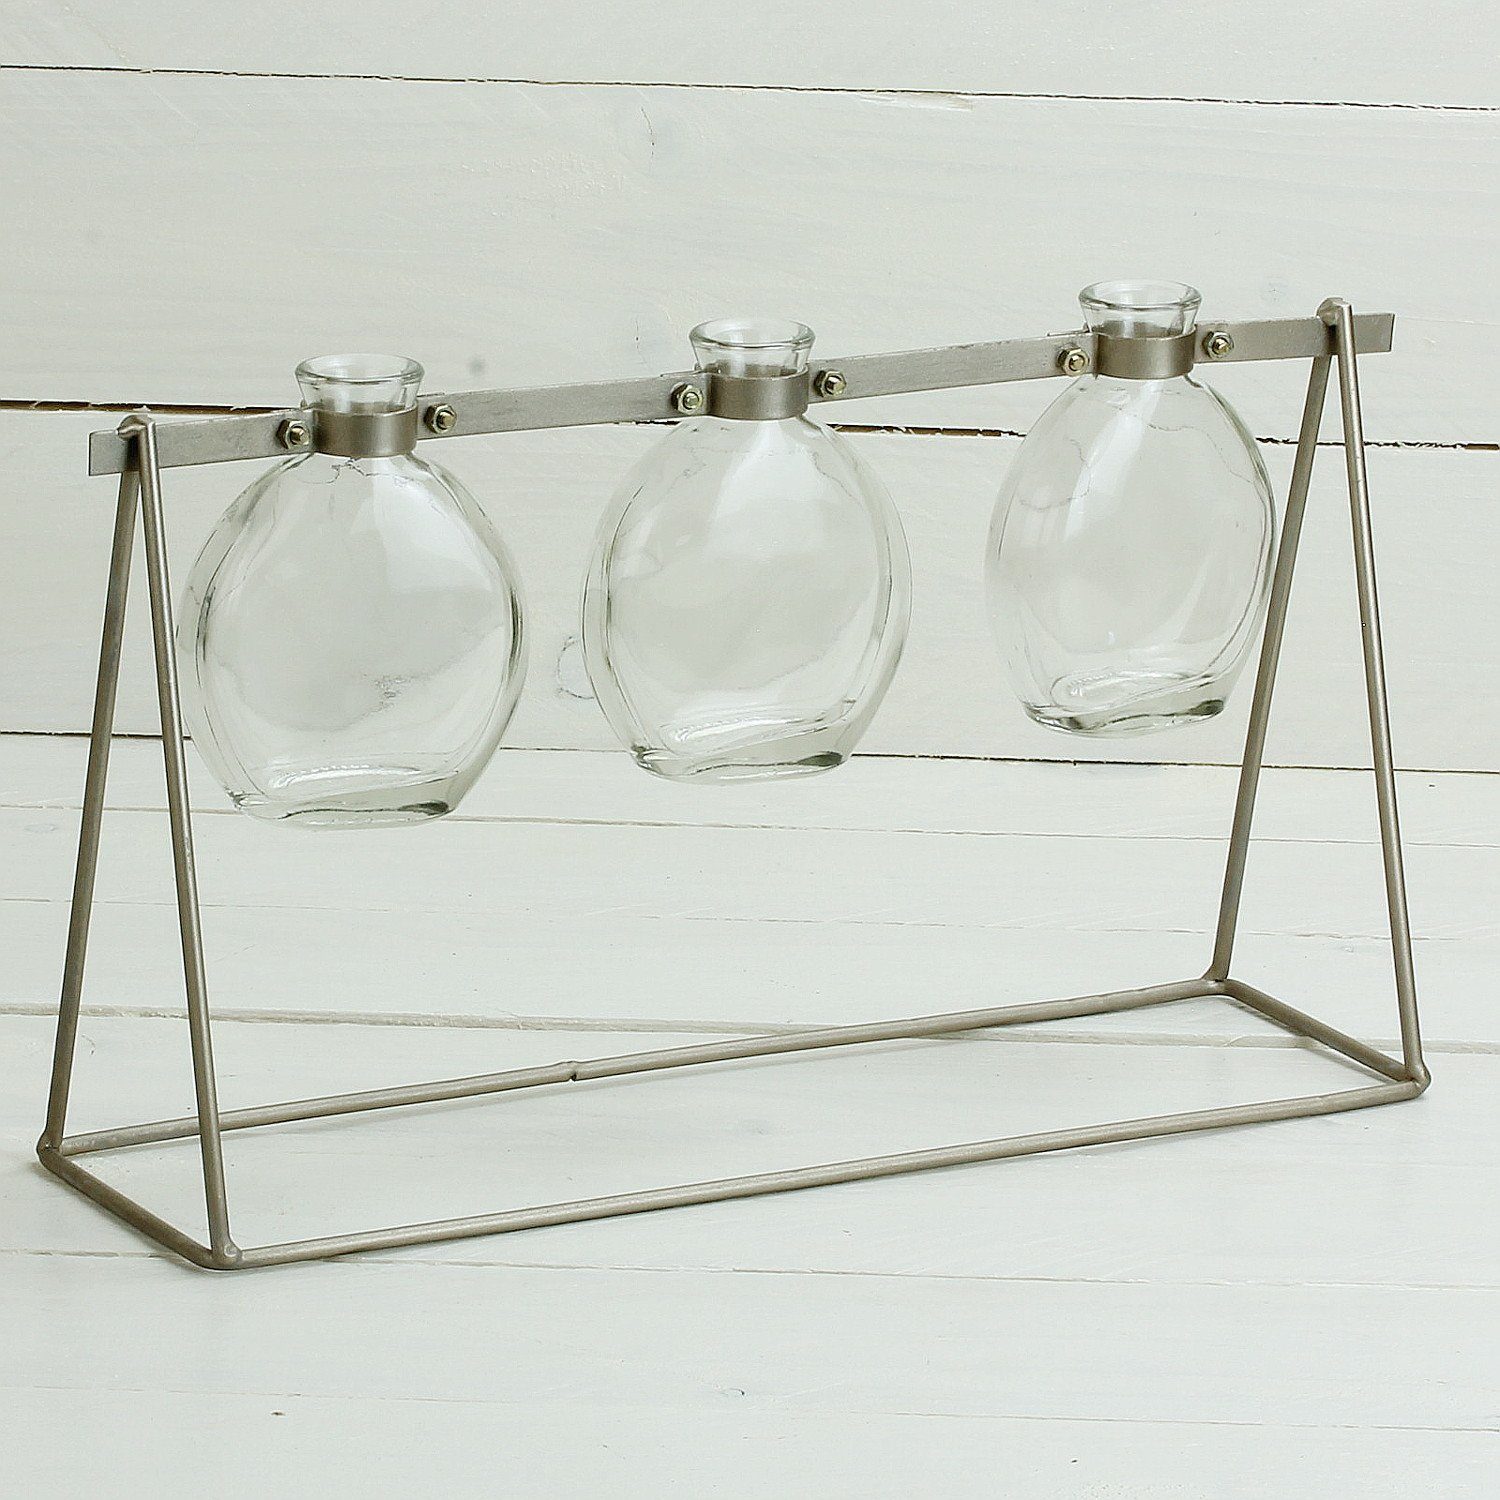 Tischvase, Moderne 3 Macosa Glas-Vasen Home Metall-Ständer klar Blumenvasen für STK. im Tisch-Dekoration Tischvasen Silber Einzelblumen Metallgestell Design